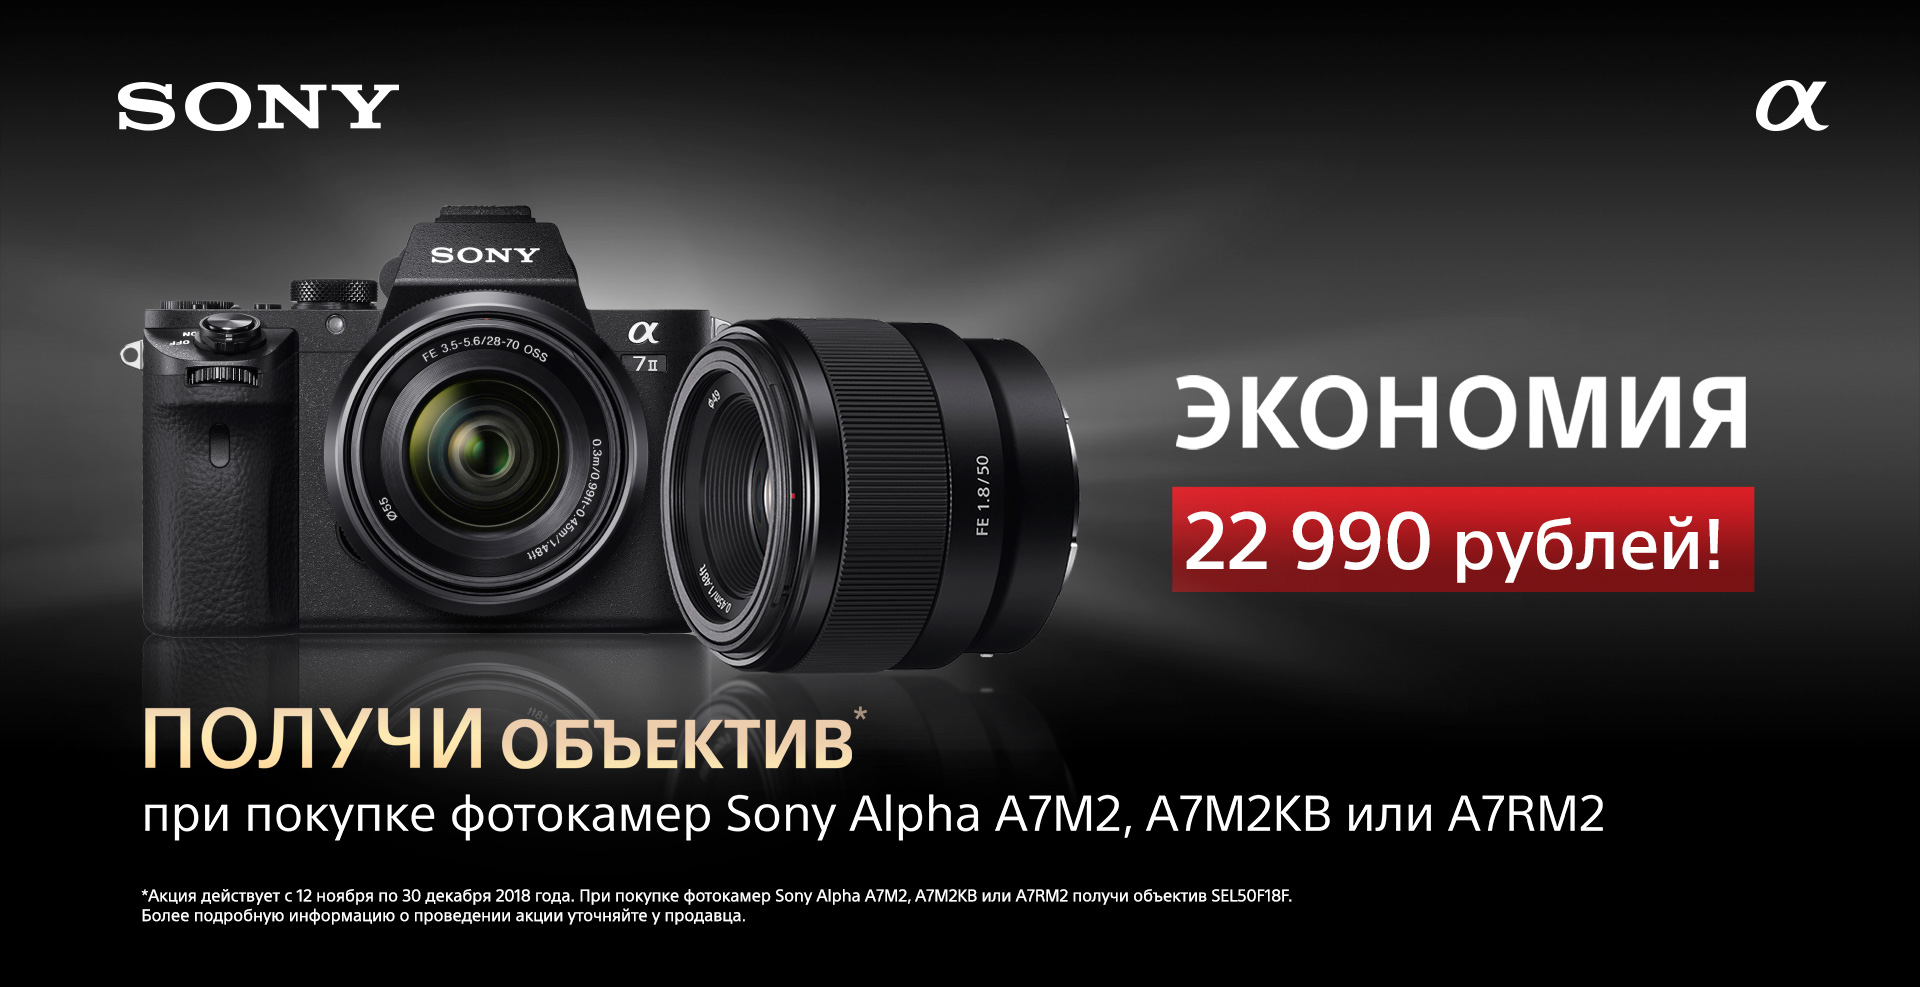 Получи обьектив при покупке фотокамер Sony Alpha A7M2, A7M2KB или A7RM2 